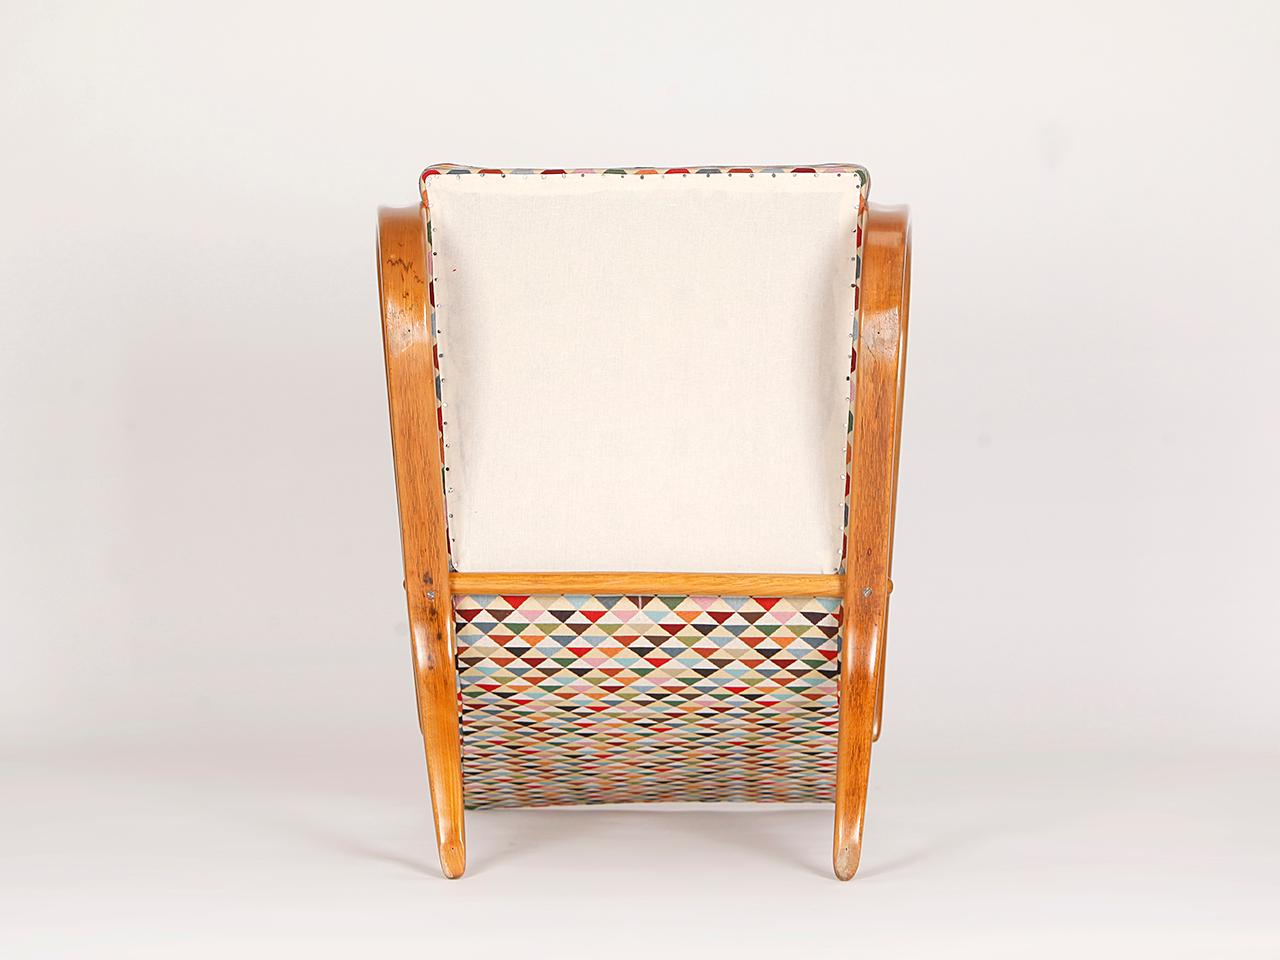 Fabric Streamline Chair H-269 by Jindrich Halabala for Spojene UP Zavody, 1930s